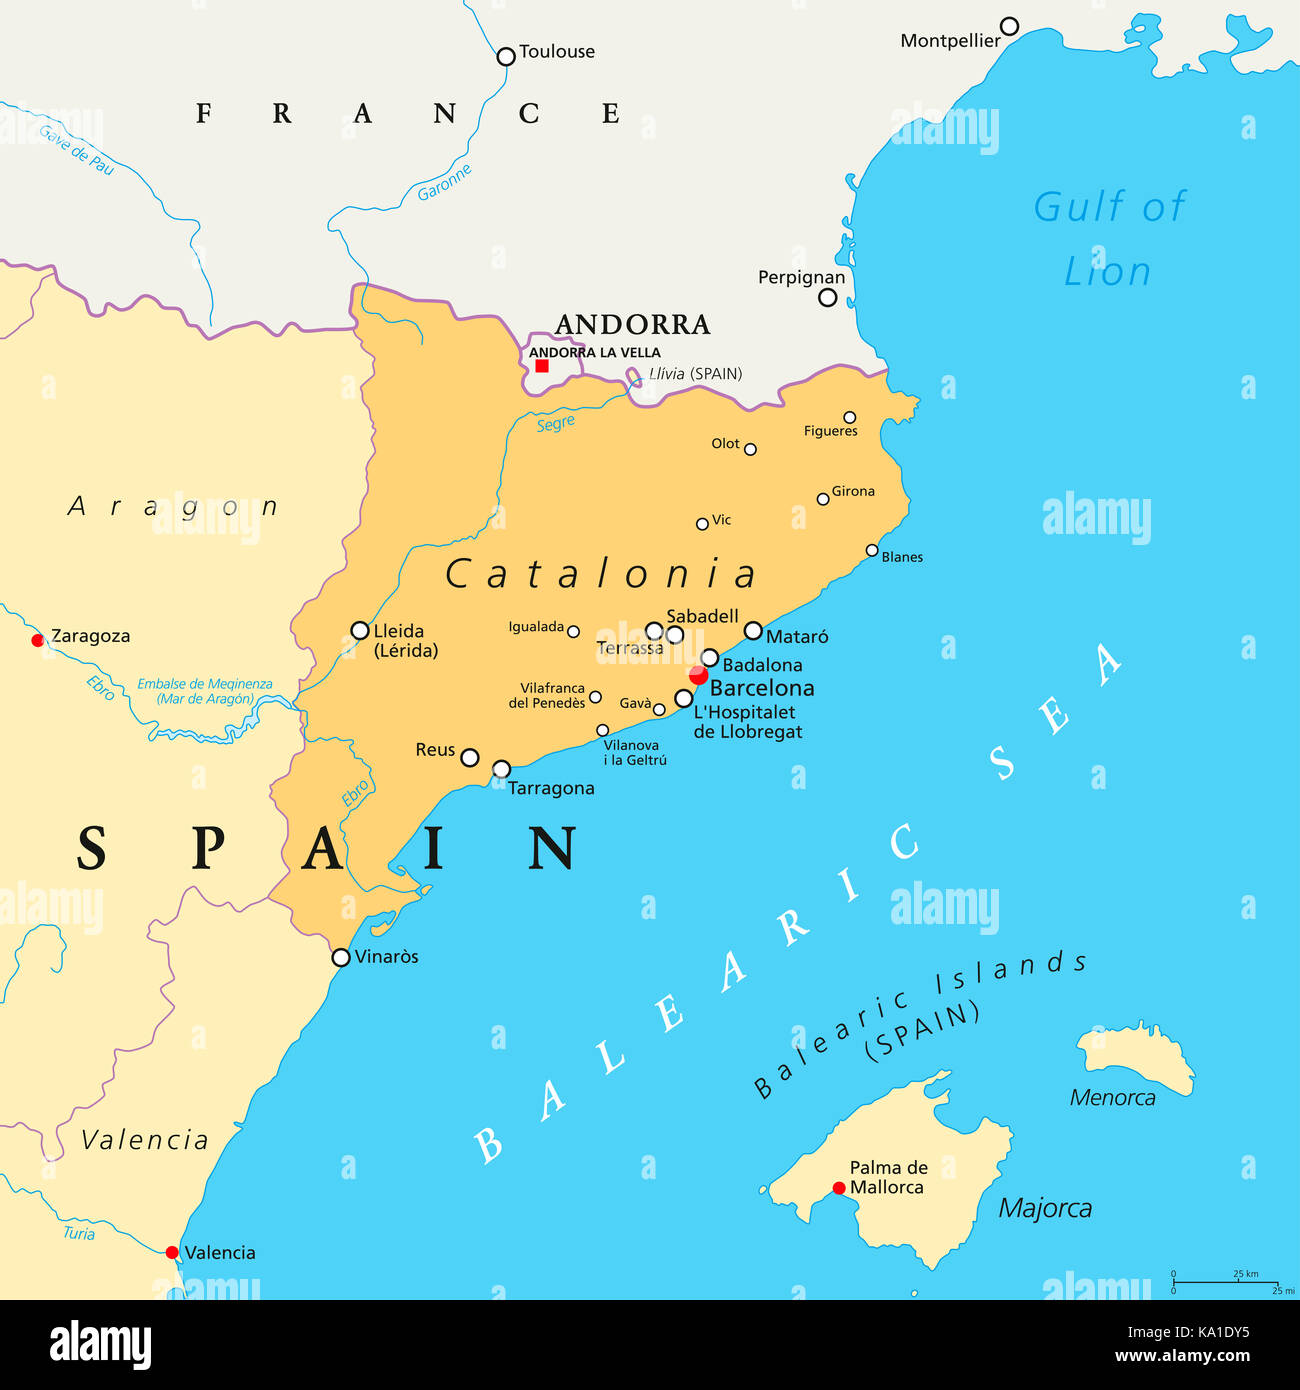 Lista 96+ Foto Mapa Interactivo De Las Comunidades Autonomas De España ...